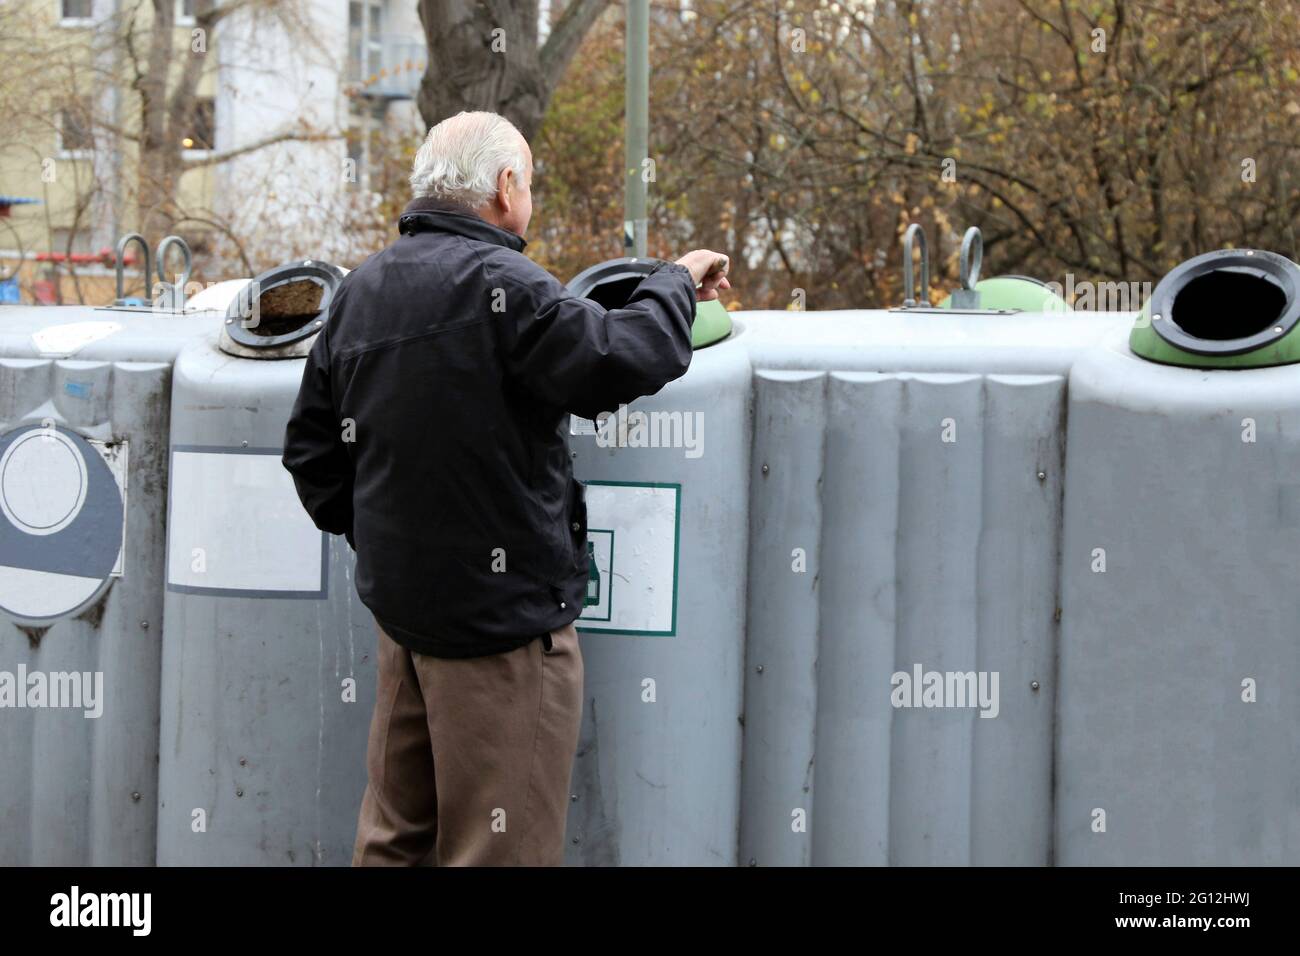 Rentner sammeln Pfandflaschen, um das Einkommen zu ergänzen (Deutschland). Stockfoto